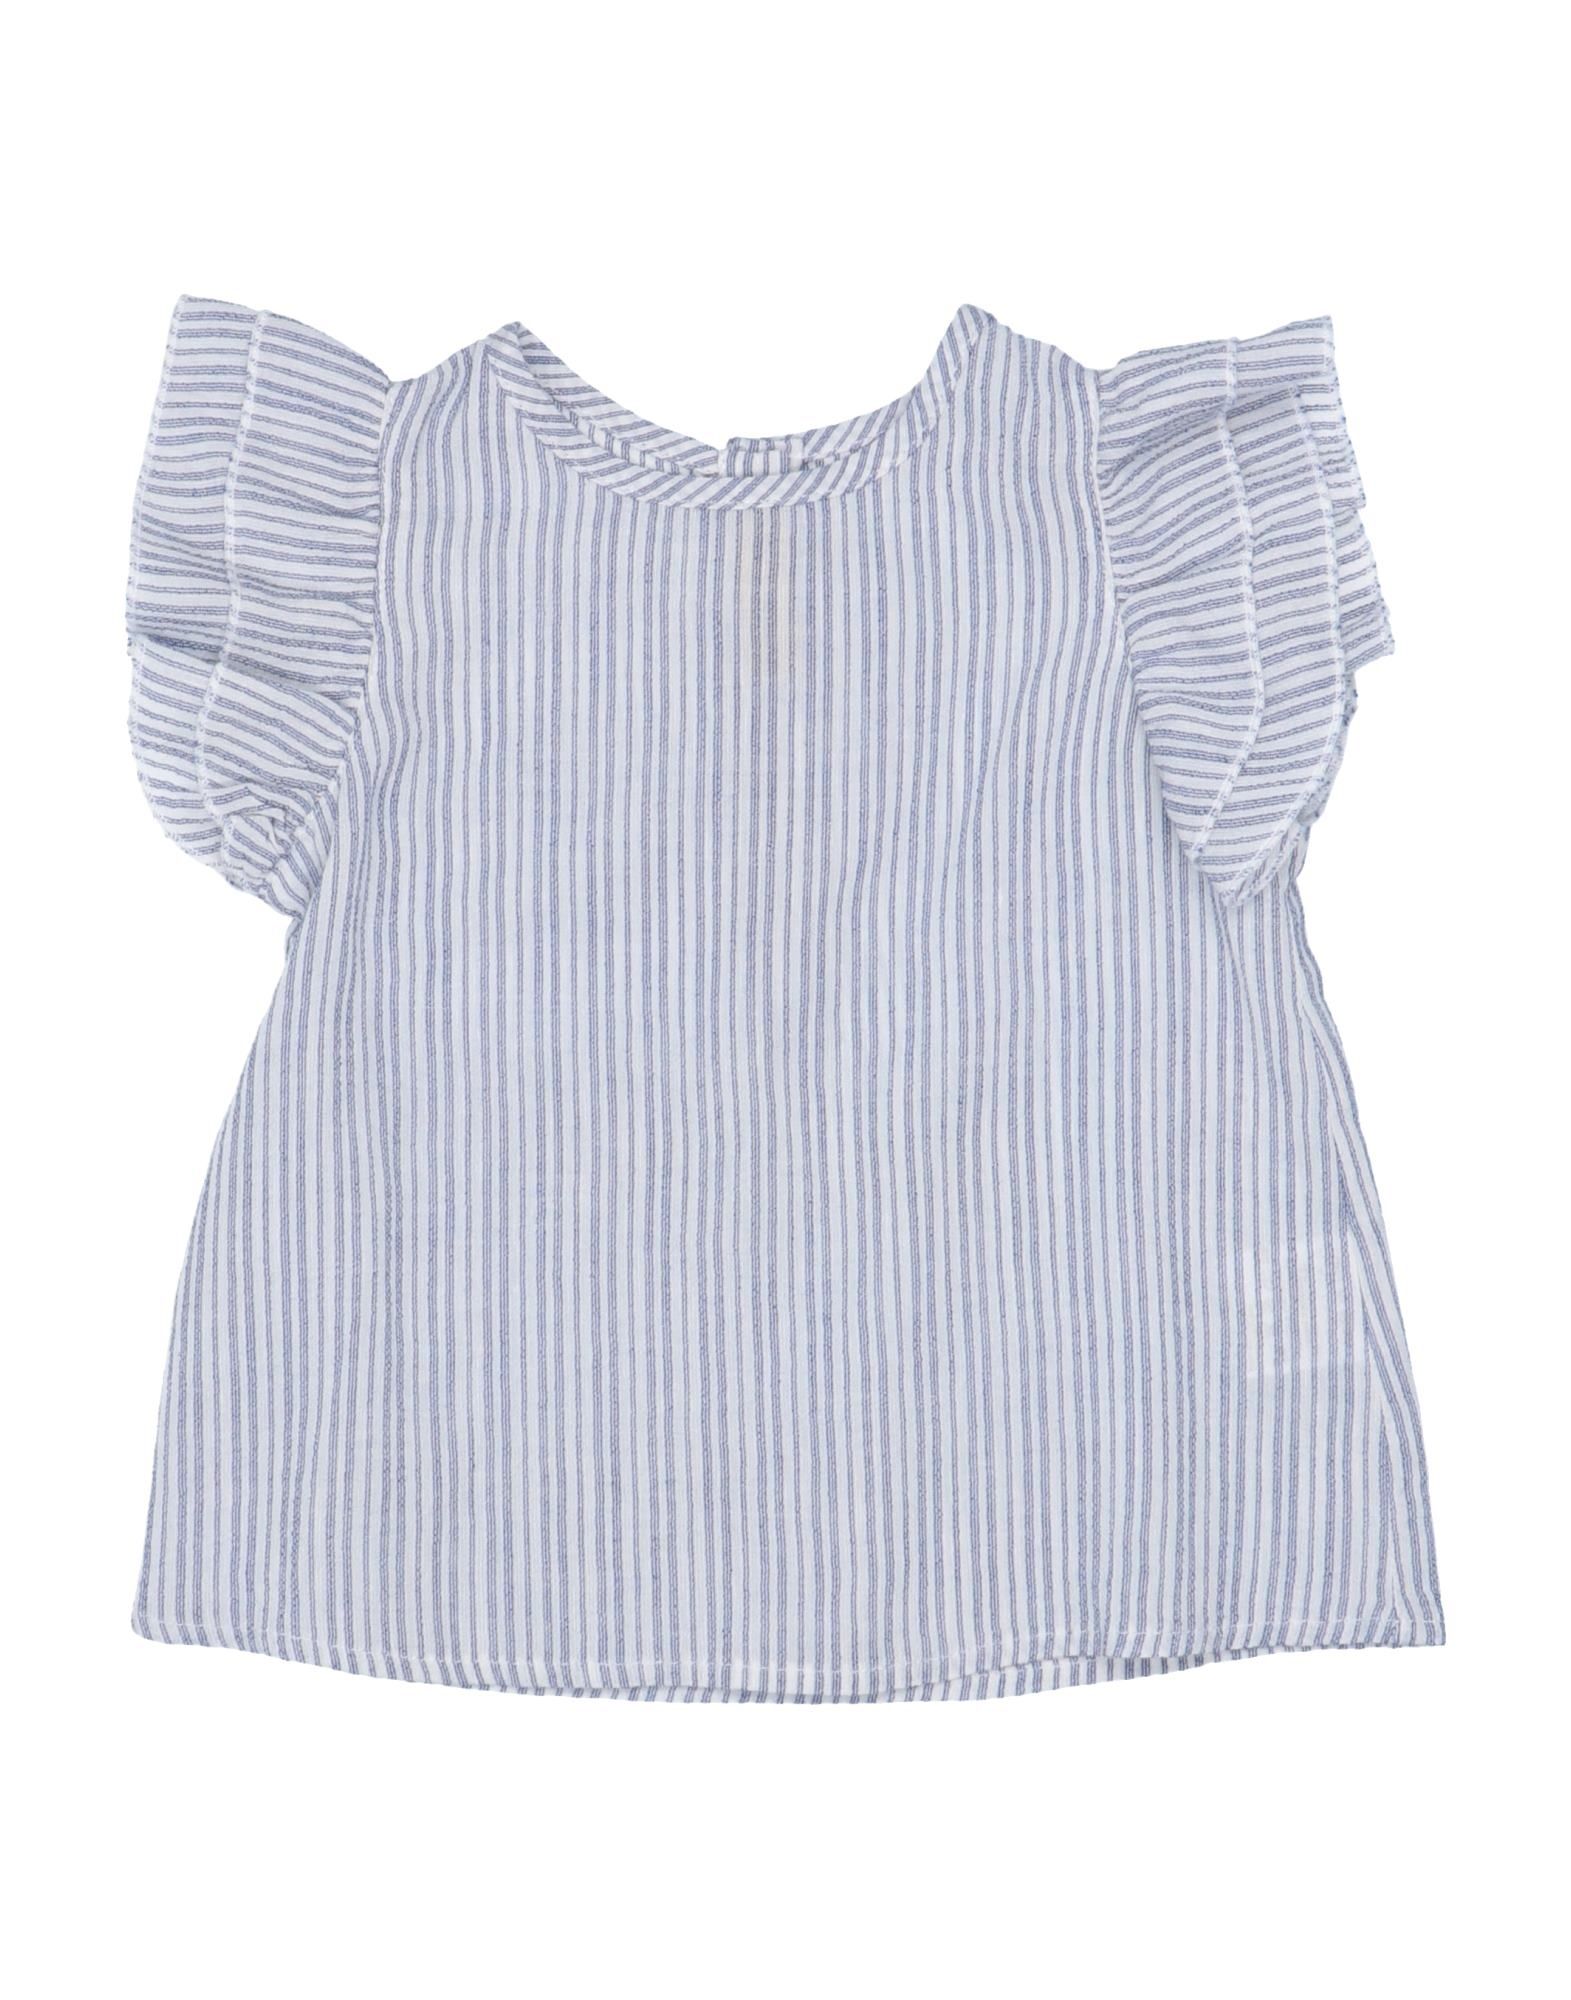 Shop De Cavana Newborn Girl Top Blue Size 3 Cotton, Viscose, Linen